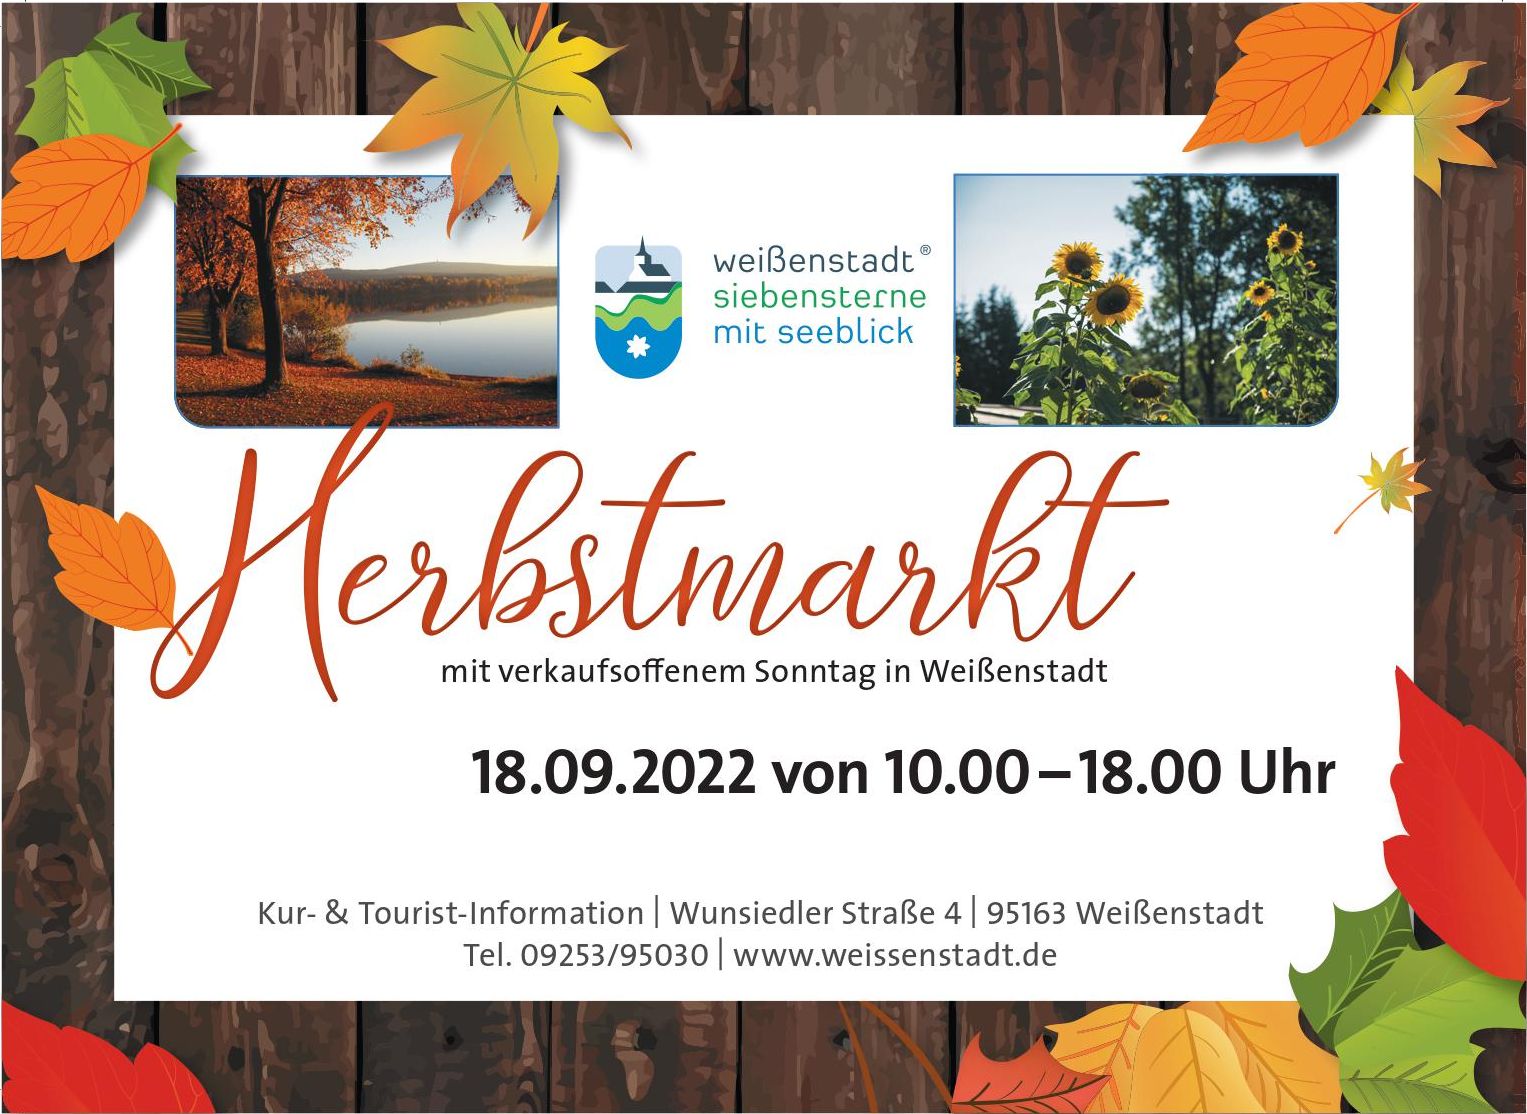 Herbstmarkt in Weißenstadt am 18.09.2022 von 10:00 bis 18:00 Uhr